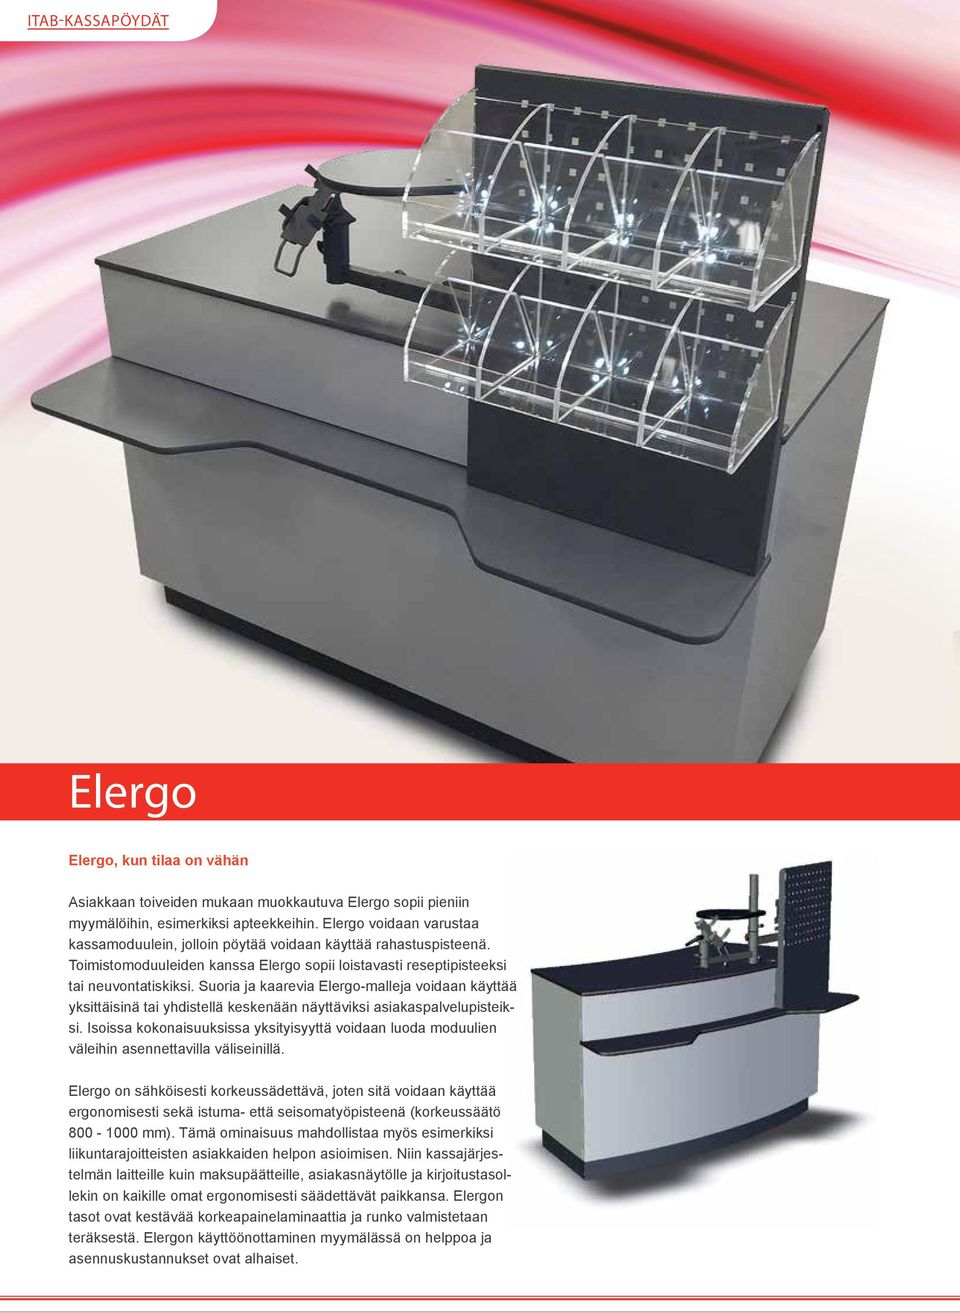 Suoria ja kaarevia Elergo-malleja voidaan käyttää yksittäisinä tai yhdistellä keskenään näyttäviksi asiakaspalvelupisteiksi.